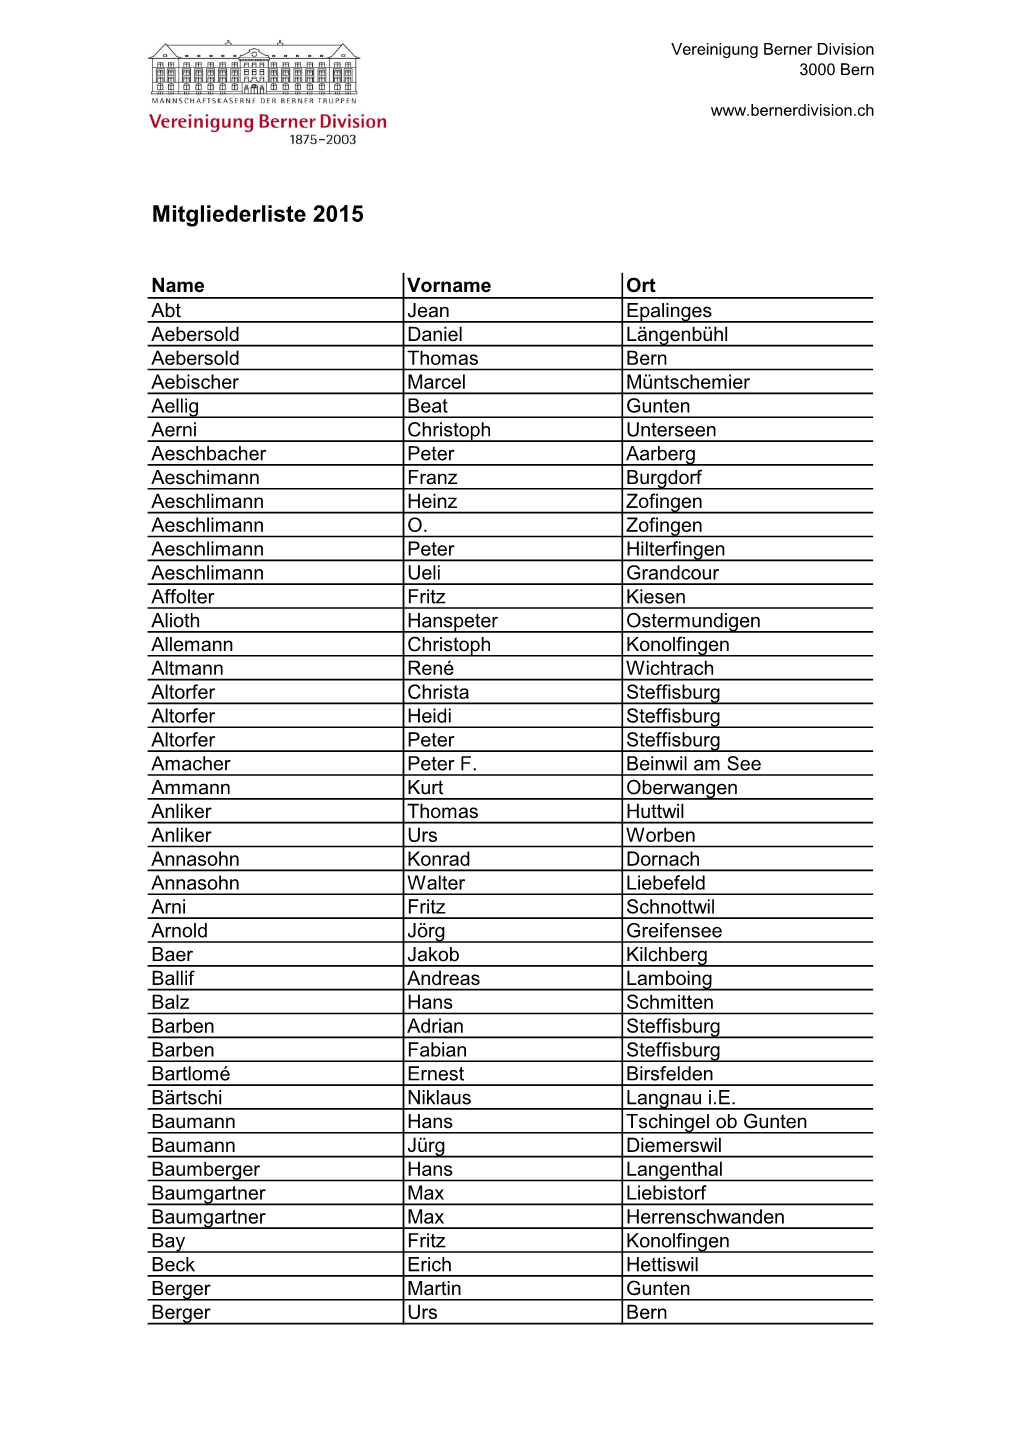 Mitgliederliste 2015